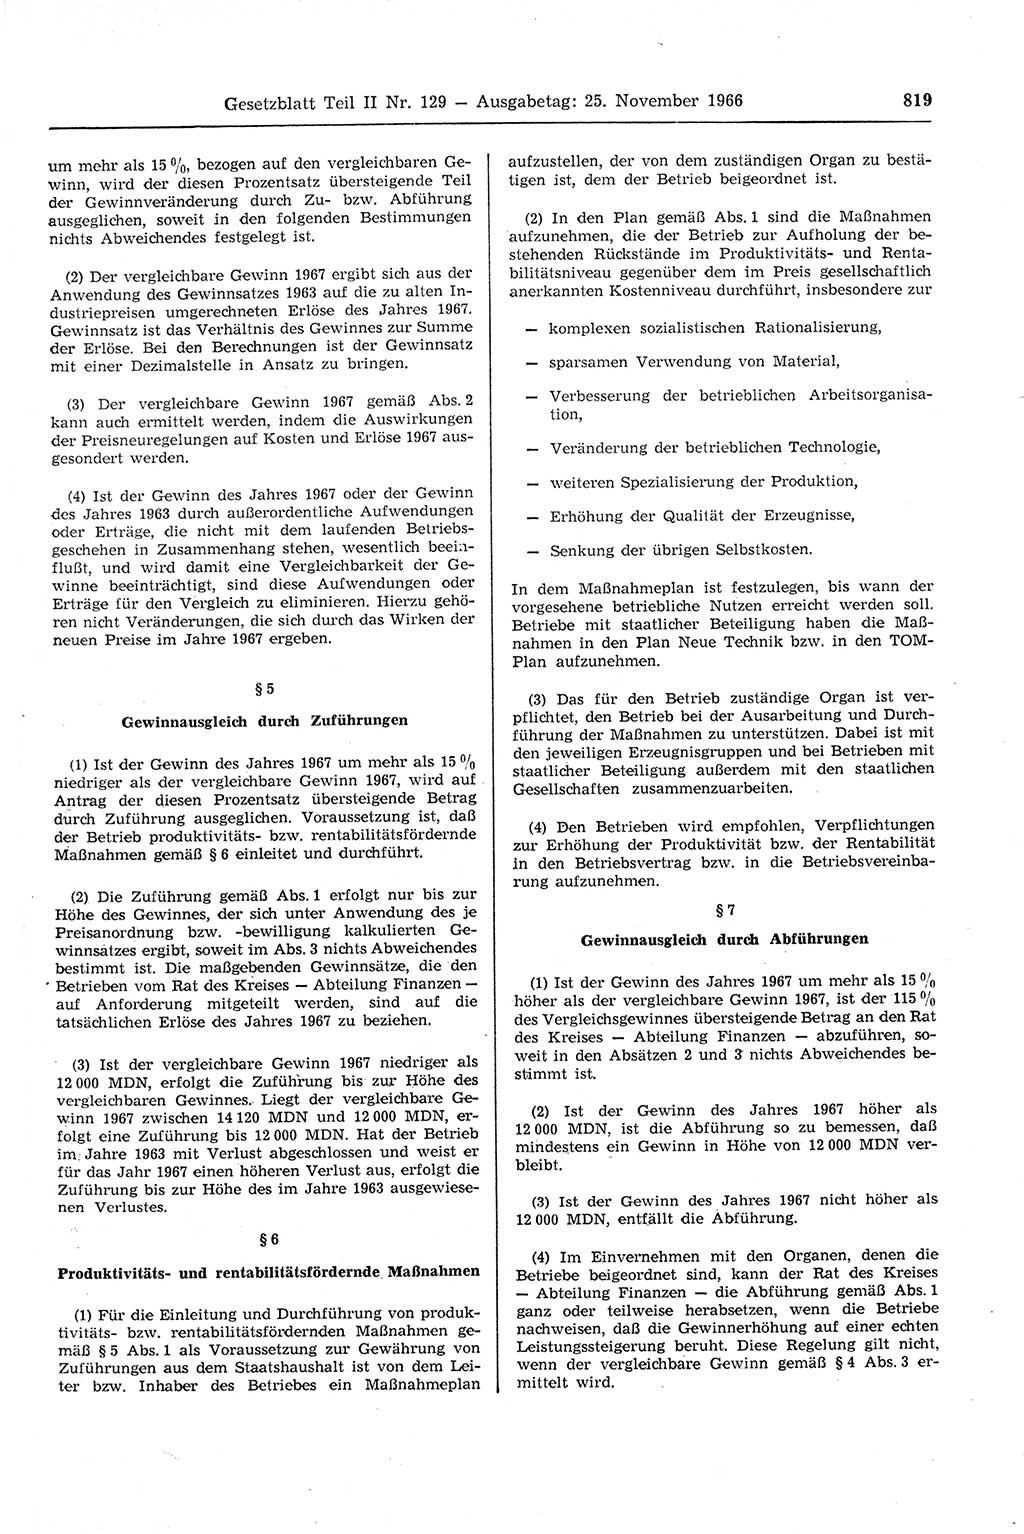 Gesetzblatt (GBl.) der Deutschen Demokratischen Republik (DDR) Teil ⅠⅠ 1966, Seite 819 (GBl. DDR ⅠⅠ 1966, S. 819)